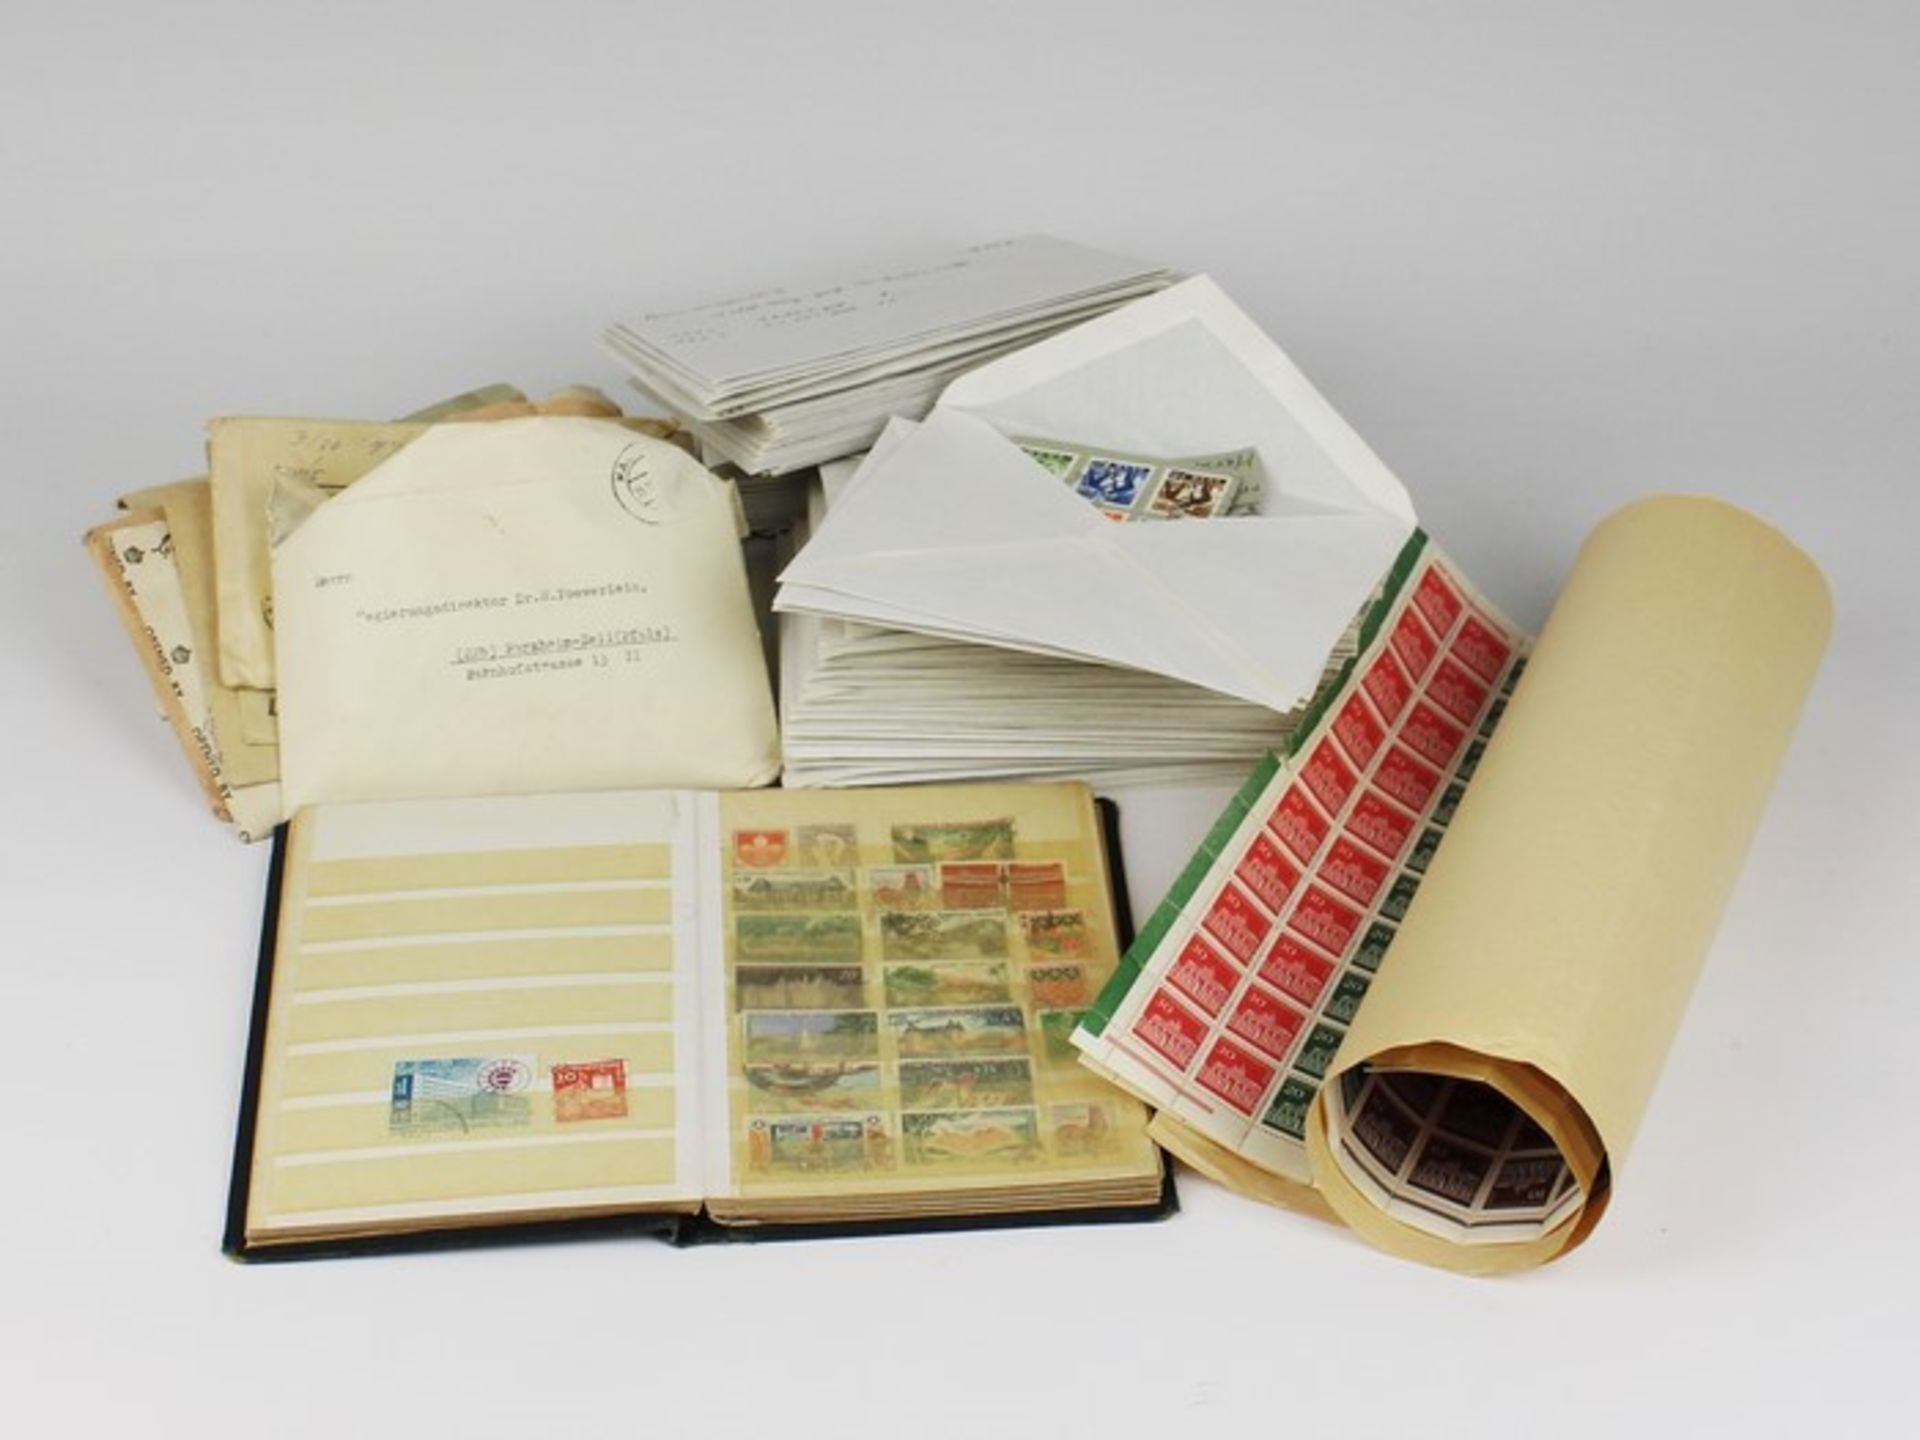 Briefmarken - BRD/Weltab ca. 1930, 1x kl. Steckalbum, lose Marken in Umschlägen sortiert, versch.